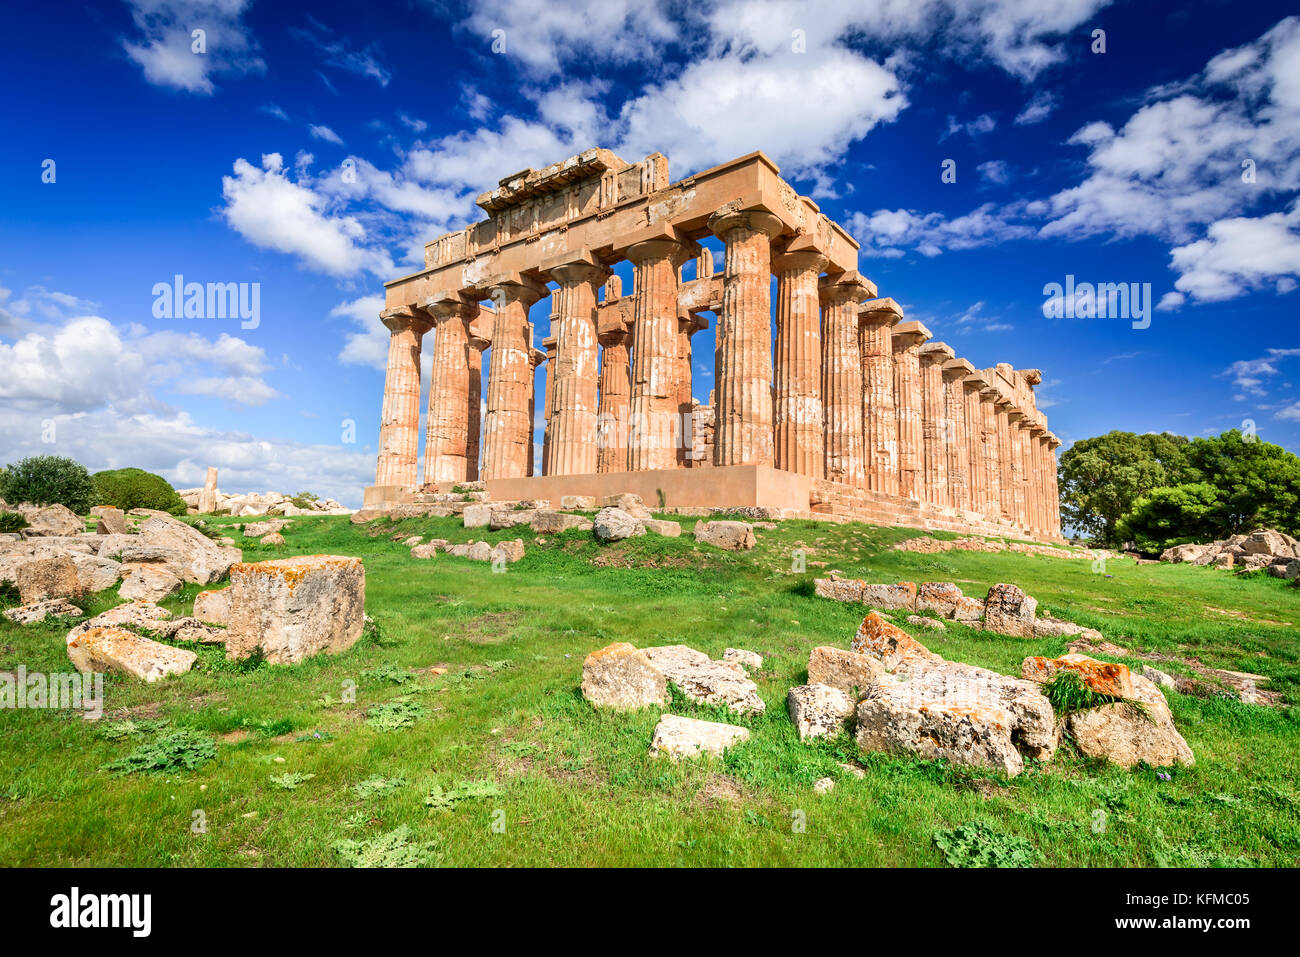 Selinunte era una antica città greca sulla costa sud-occidentale della Sicilia in Italia. Tempio di Hera rovine di stile dorico architettura. Foto Stock